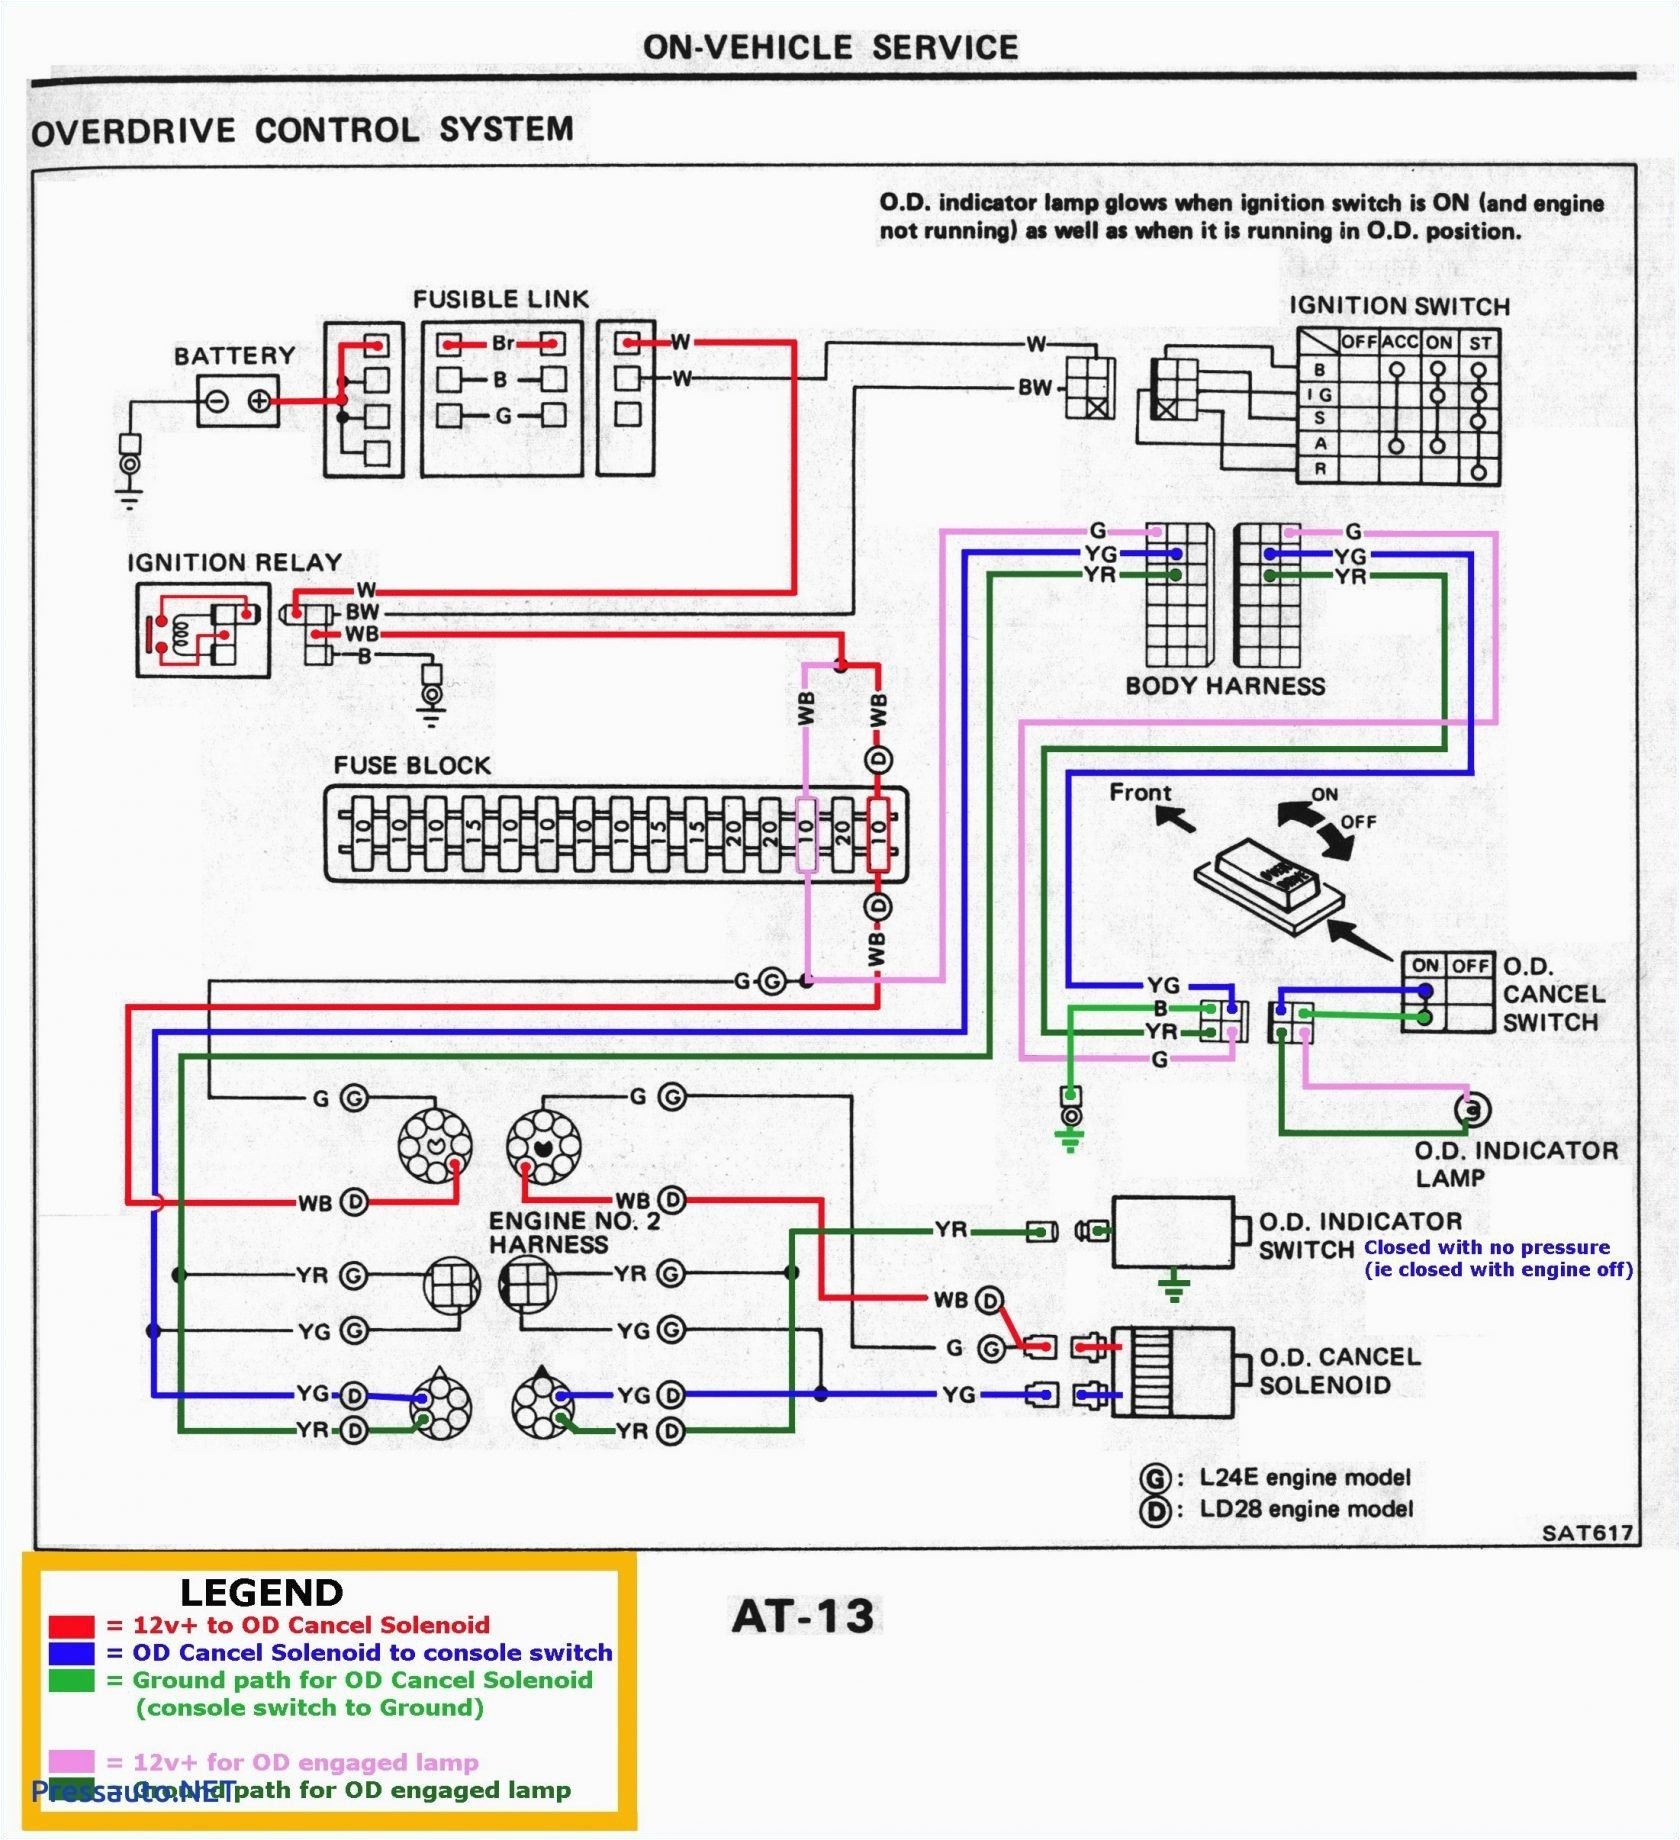 50 amp rv wiring schematic free wiring diagram50 amp rv wiring schematic wiring diagram 50 amp